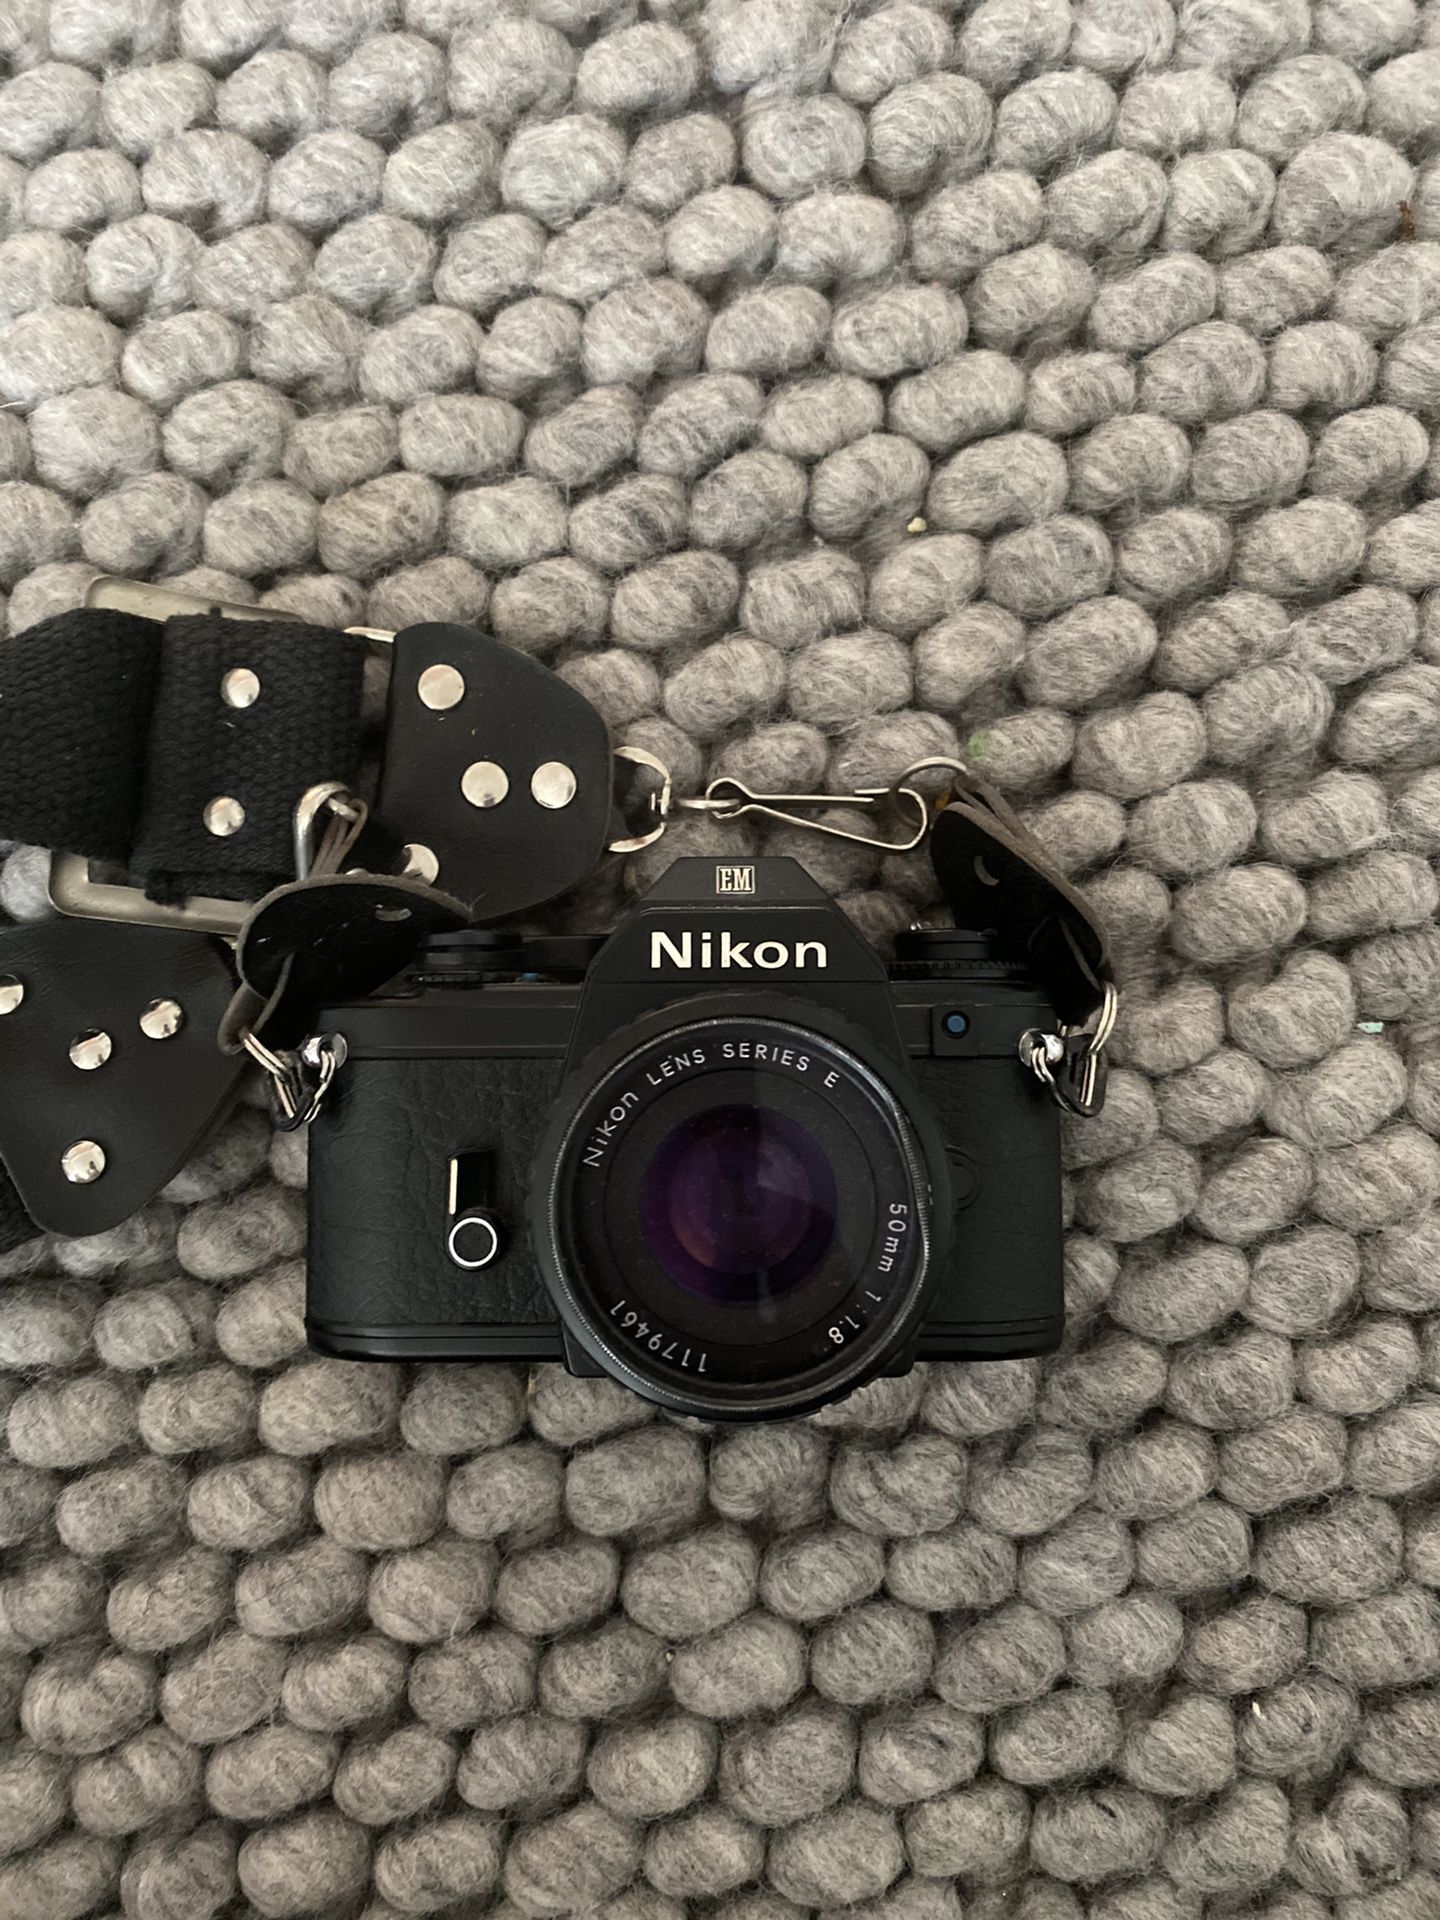 Nikon EM 35MM Film SLR Camera Nikon Lens Series E 50mm 1:18